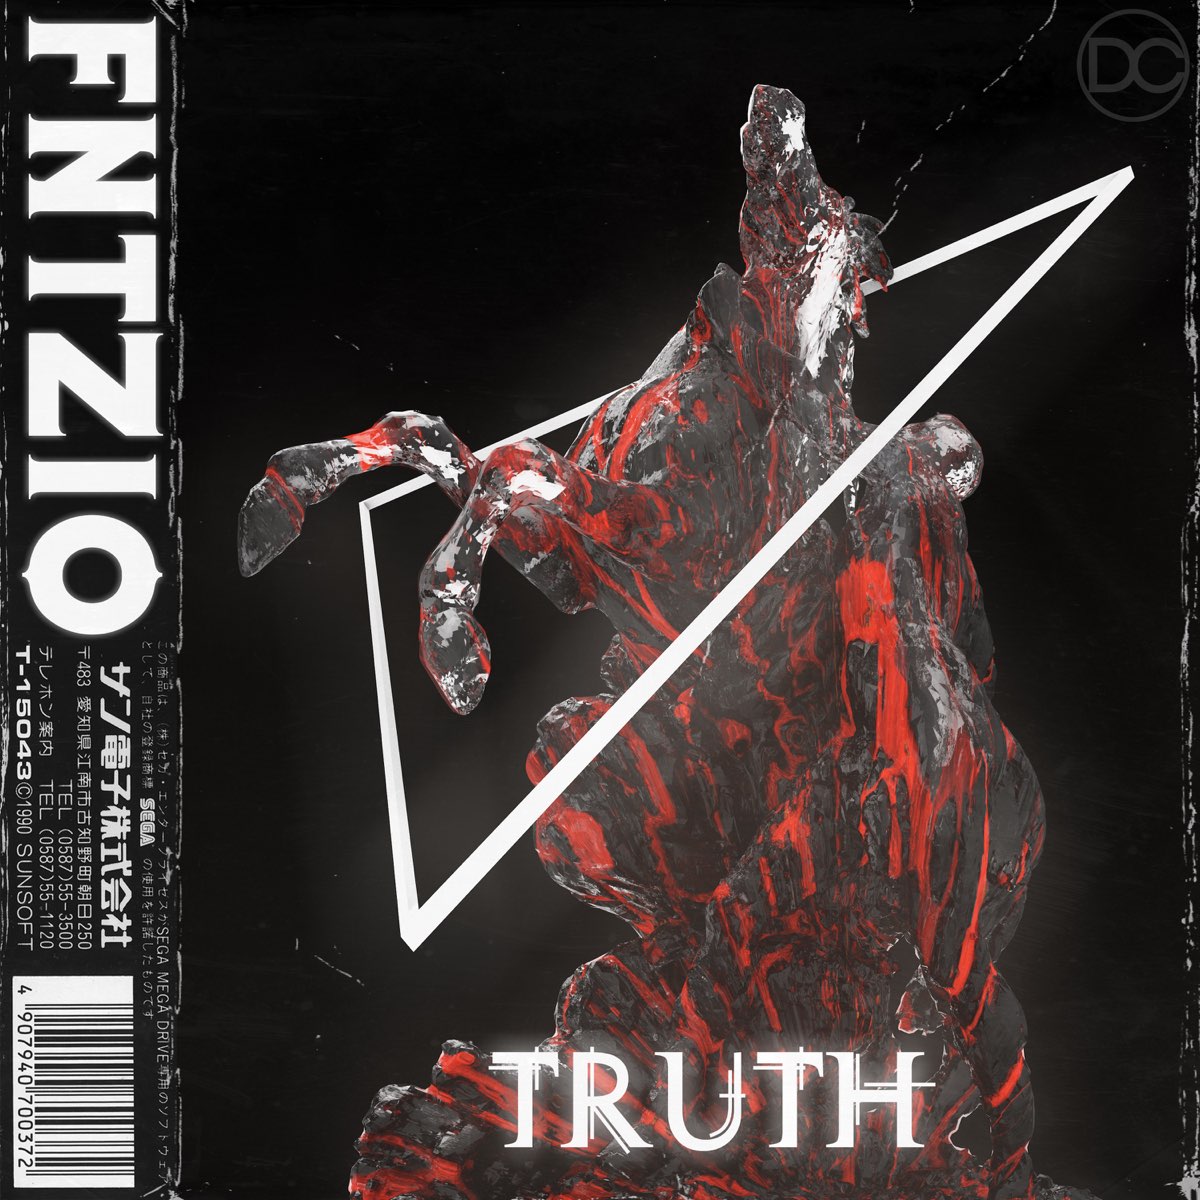 Truth - Single - Album by Fantazio - Apple Music